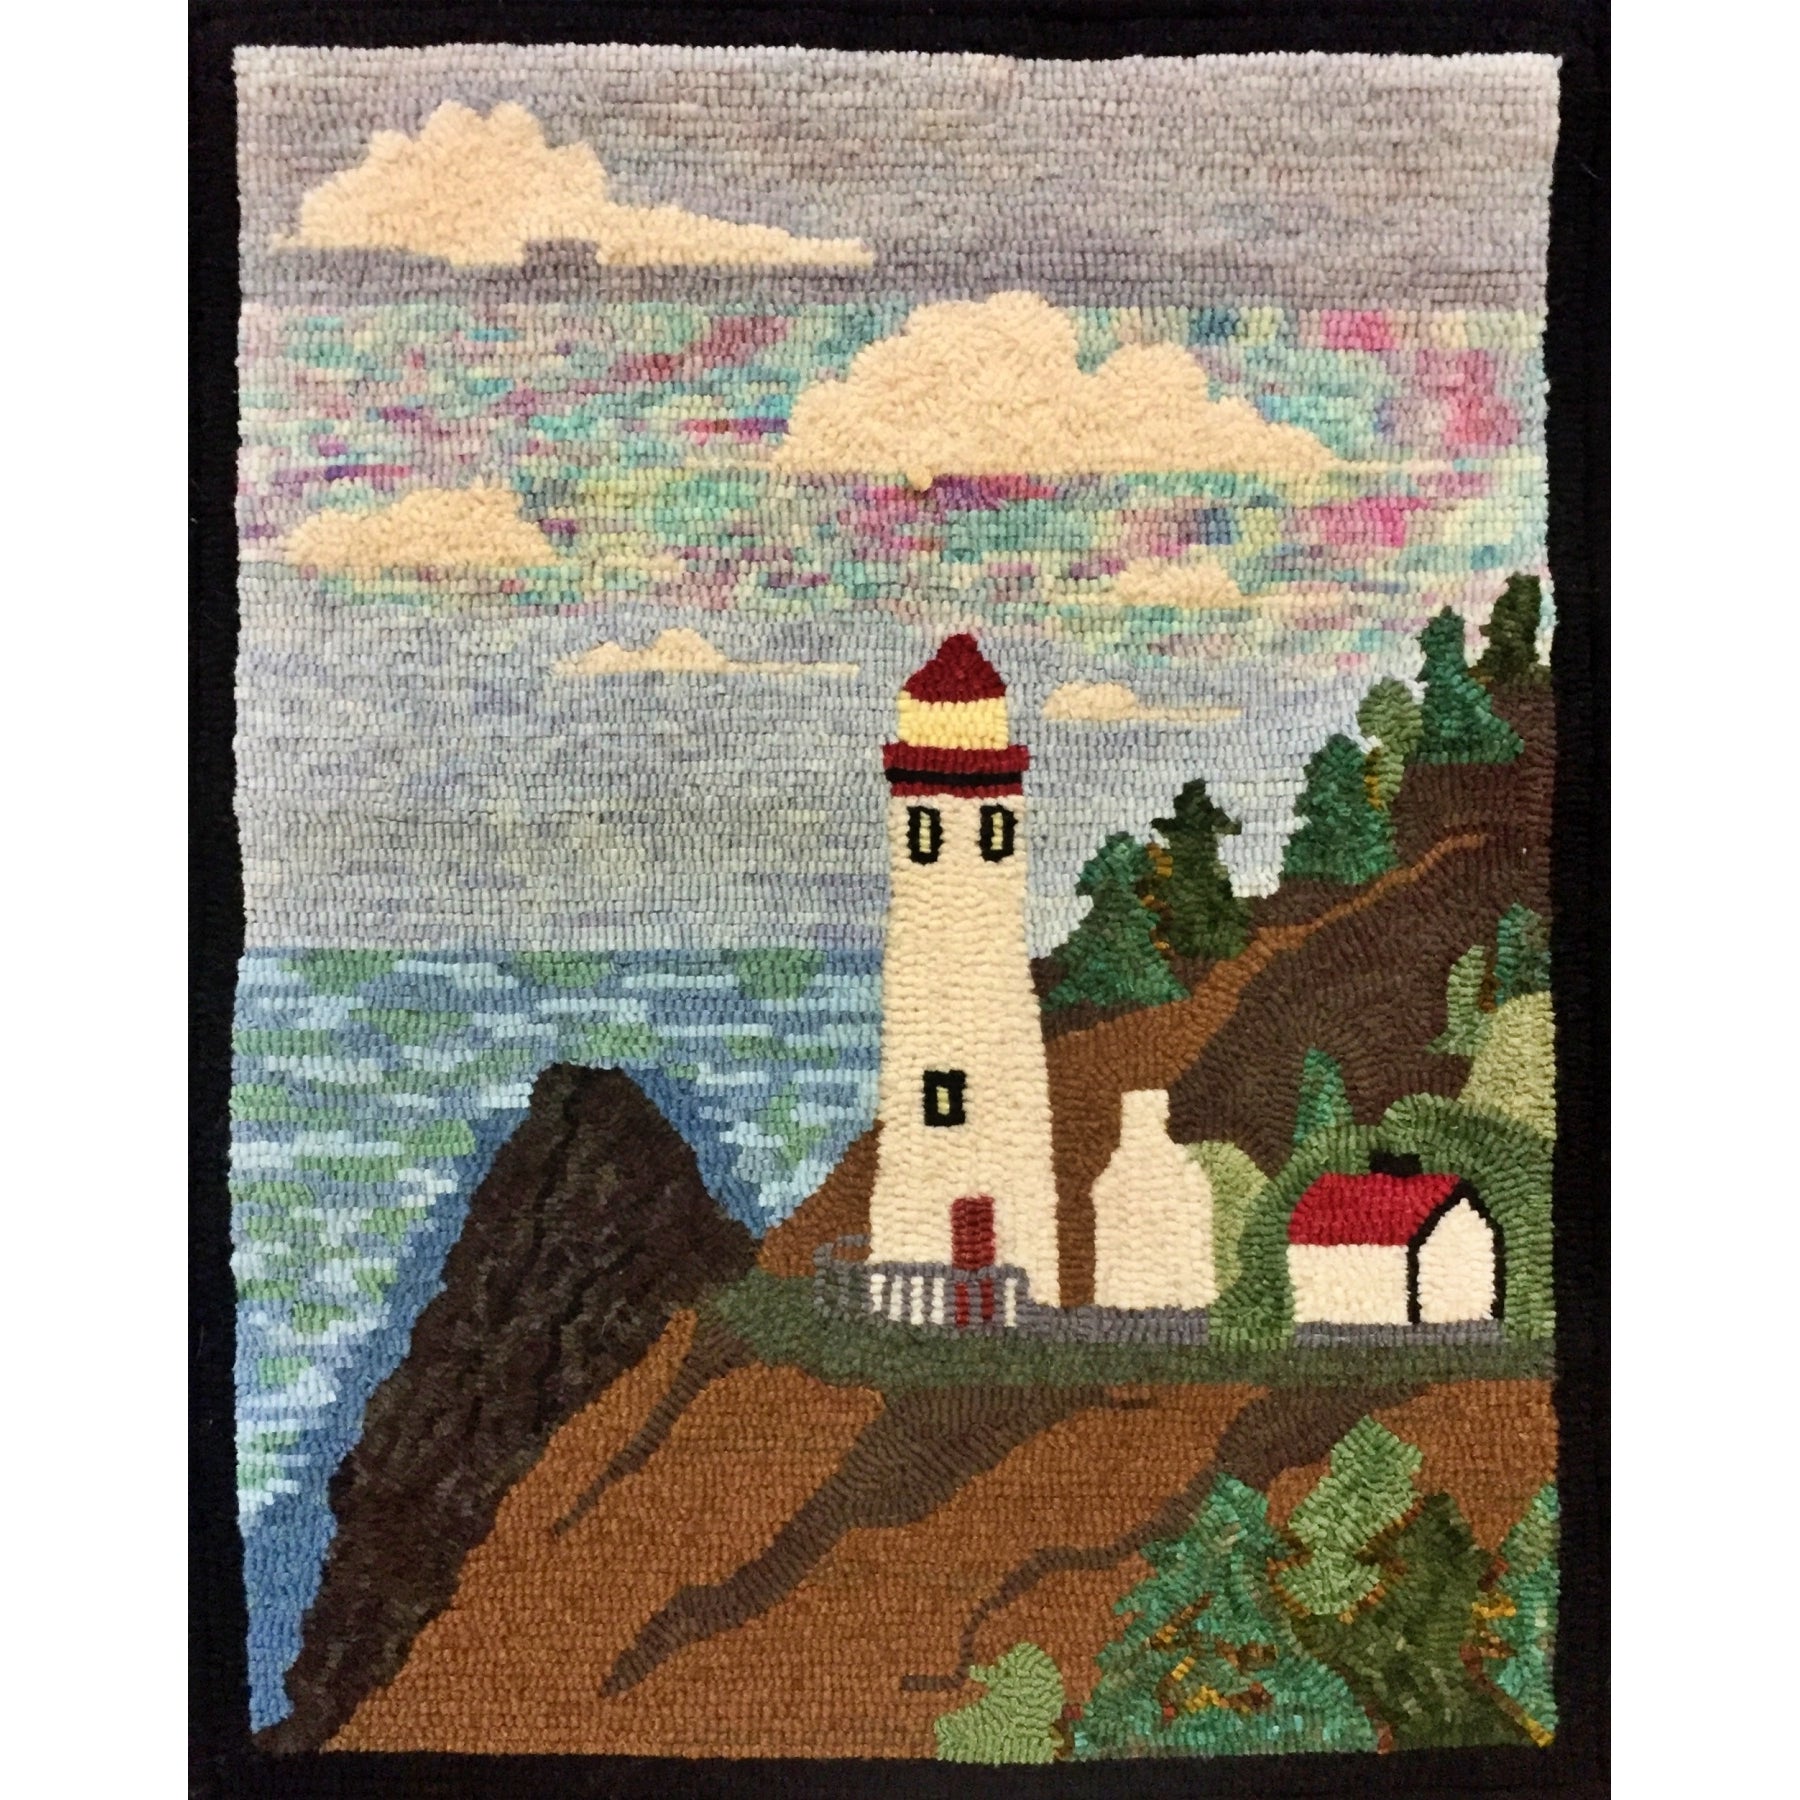 Florence, Oregon, rug hooked by Jo Turner